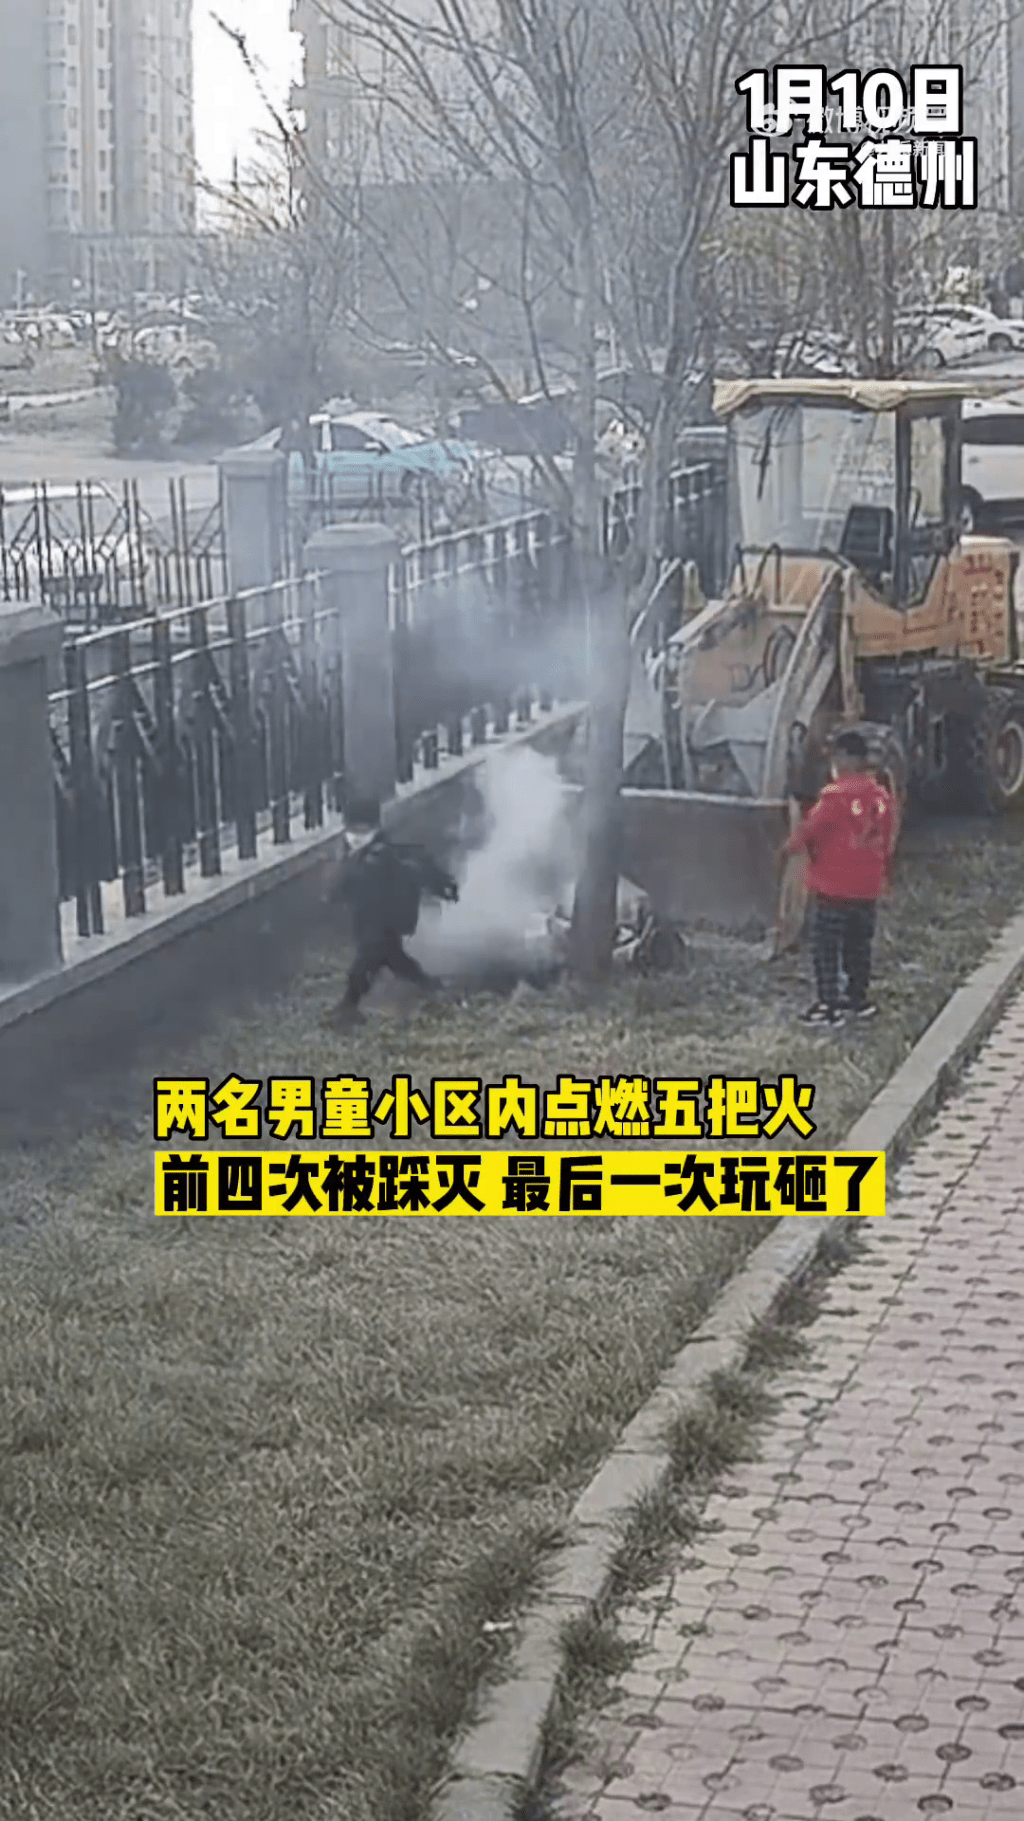 兩名小童在社區一輛鏟車後玩火，其中一名更在燃燒中的雜草上嘗試將火踩熄。